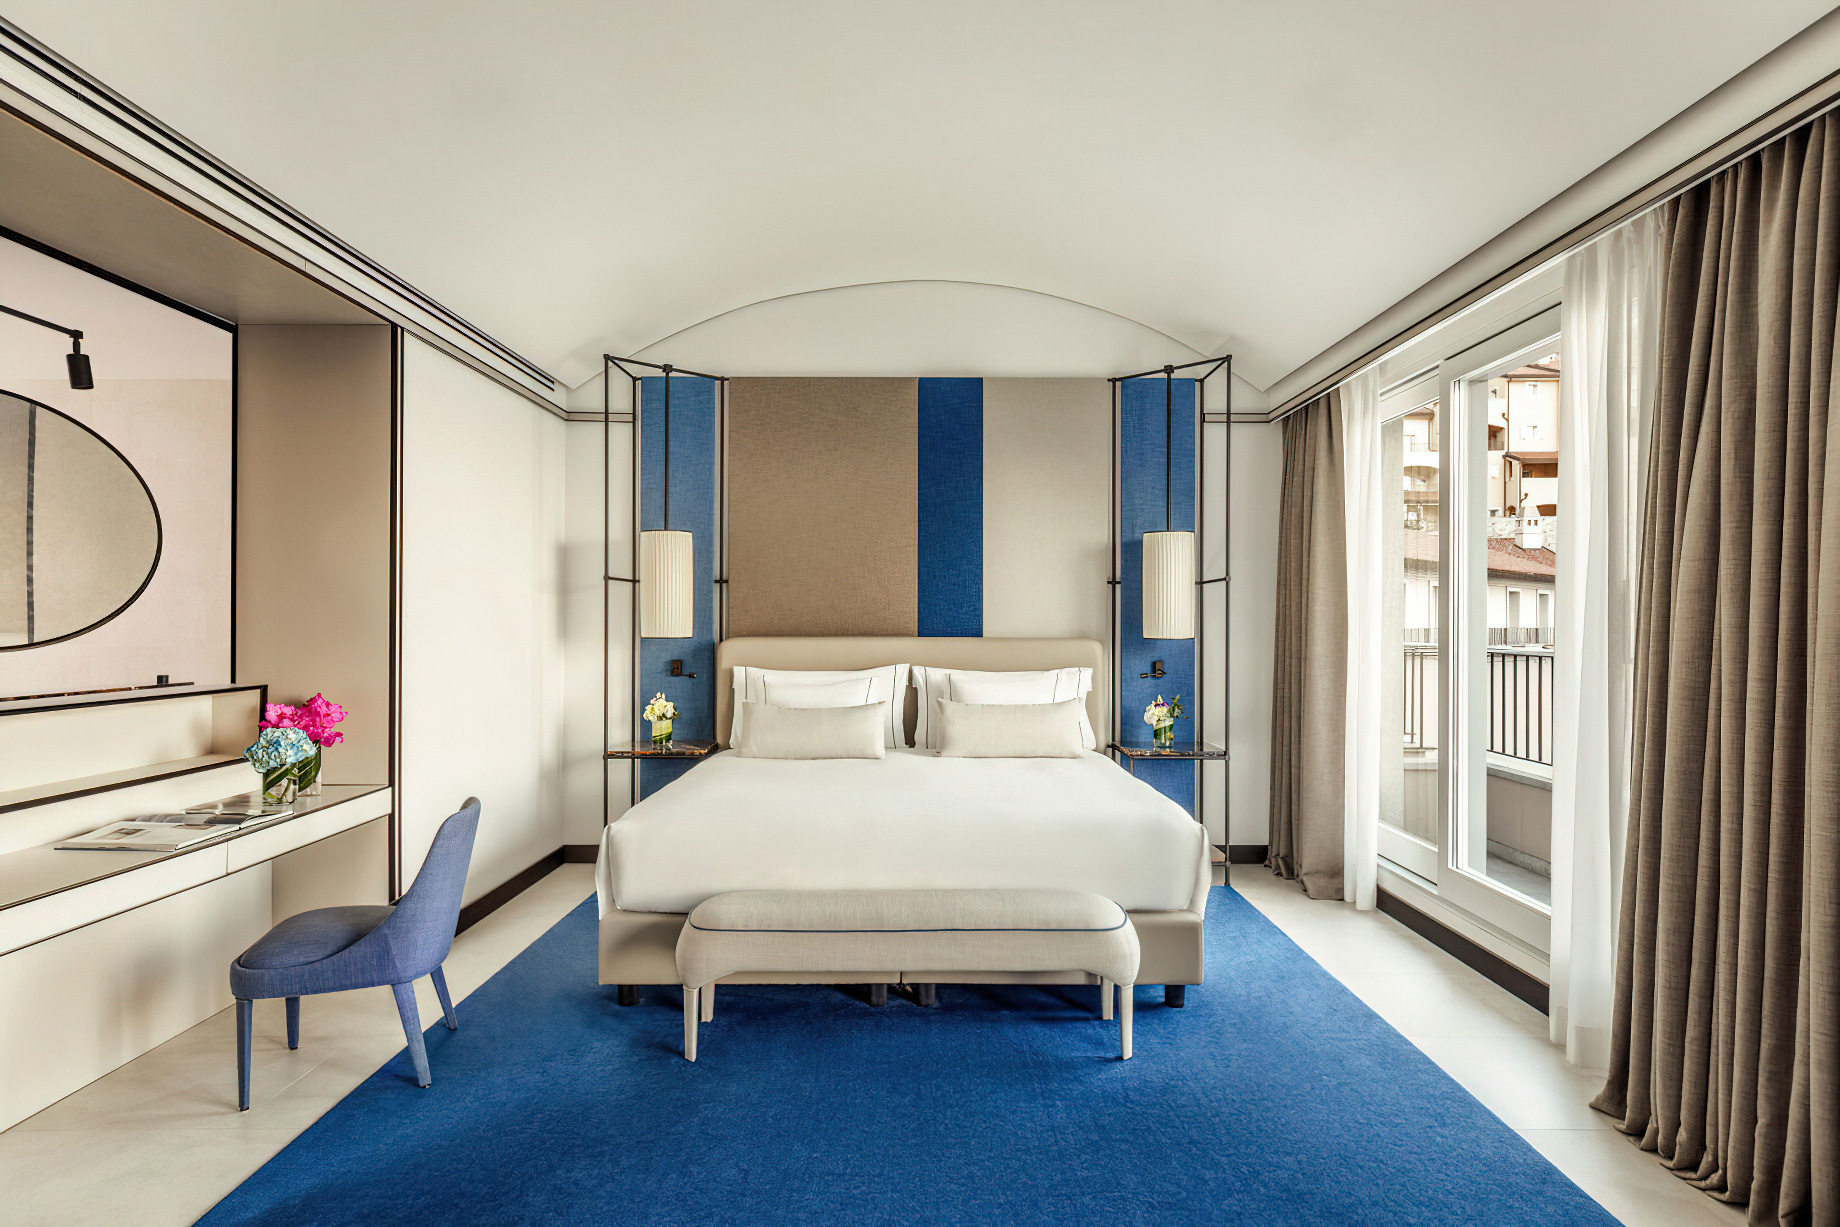 Tivoli Portopiccolo Sistiana Resort & Spa – Sistiana, Italy – Guest Room